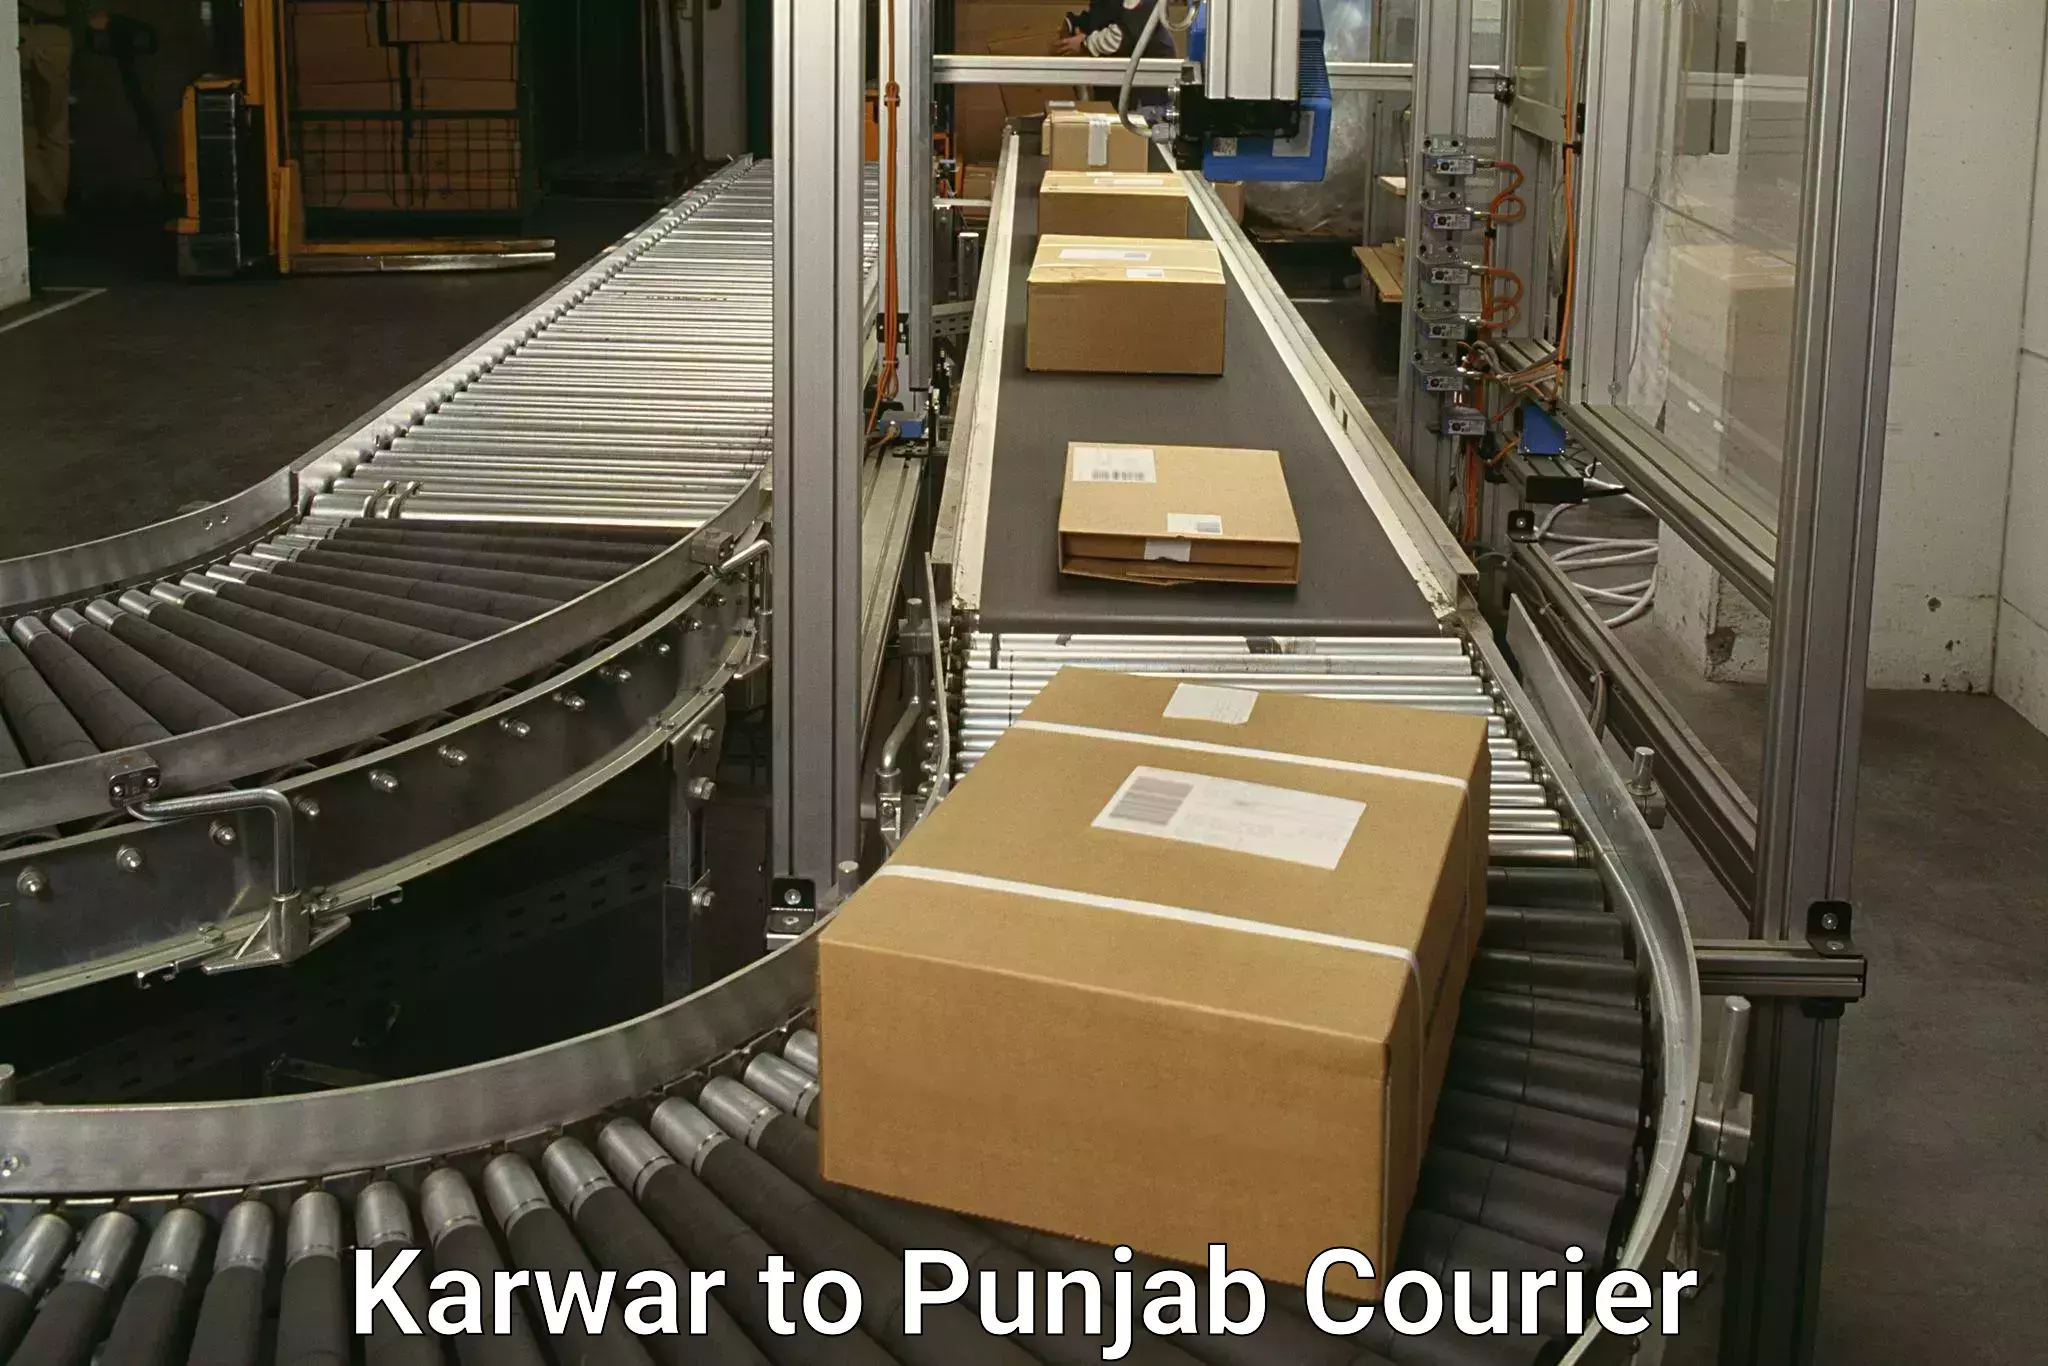 24/7 courier service in Karwar to Abohar